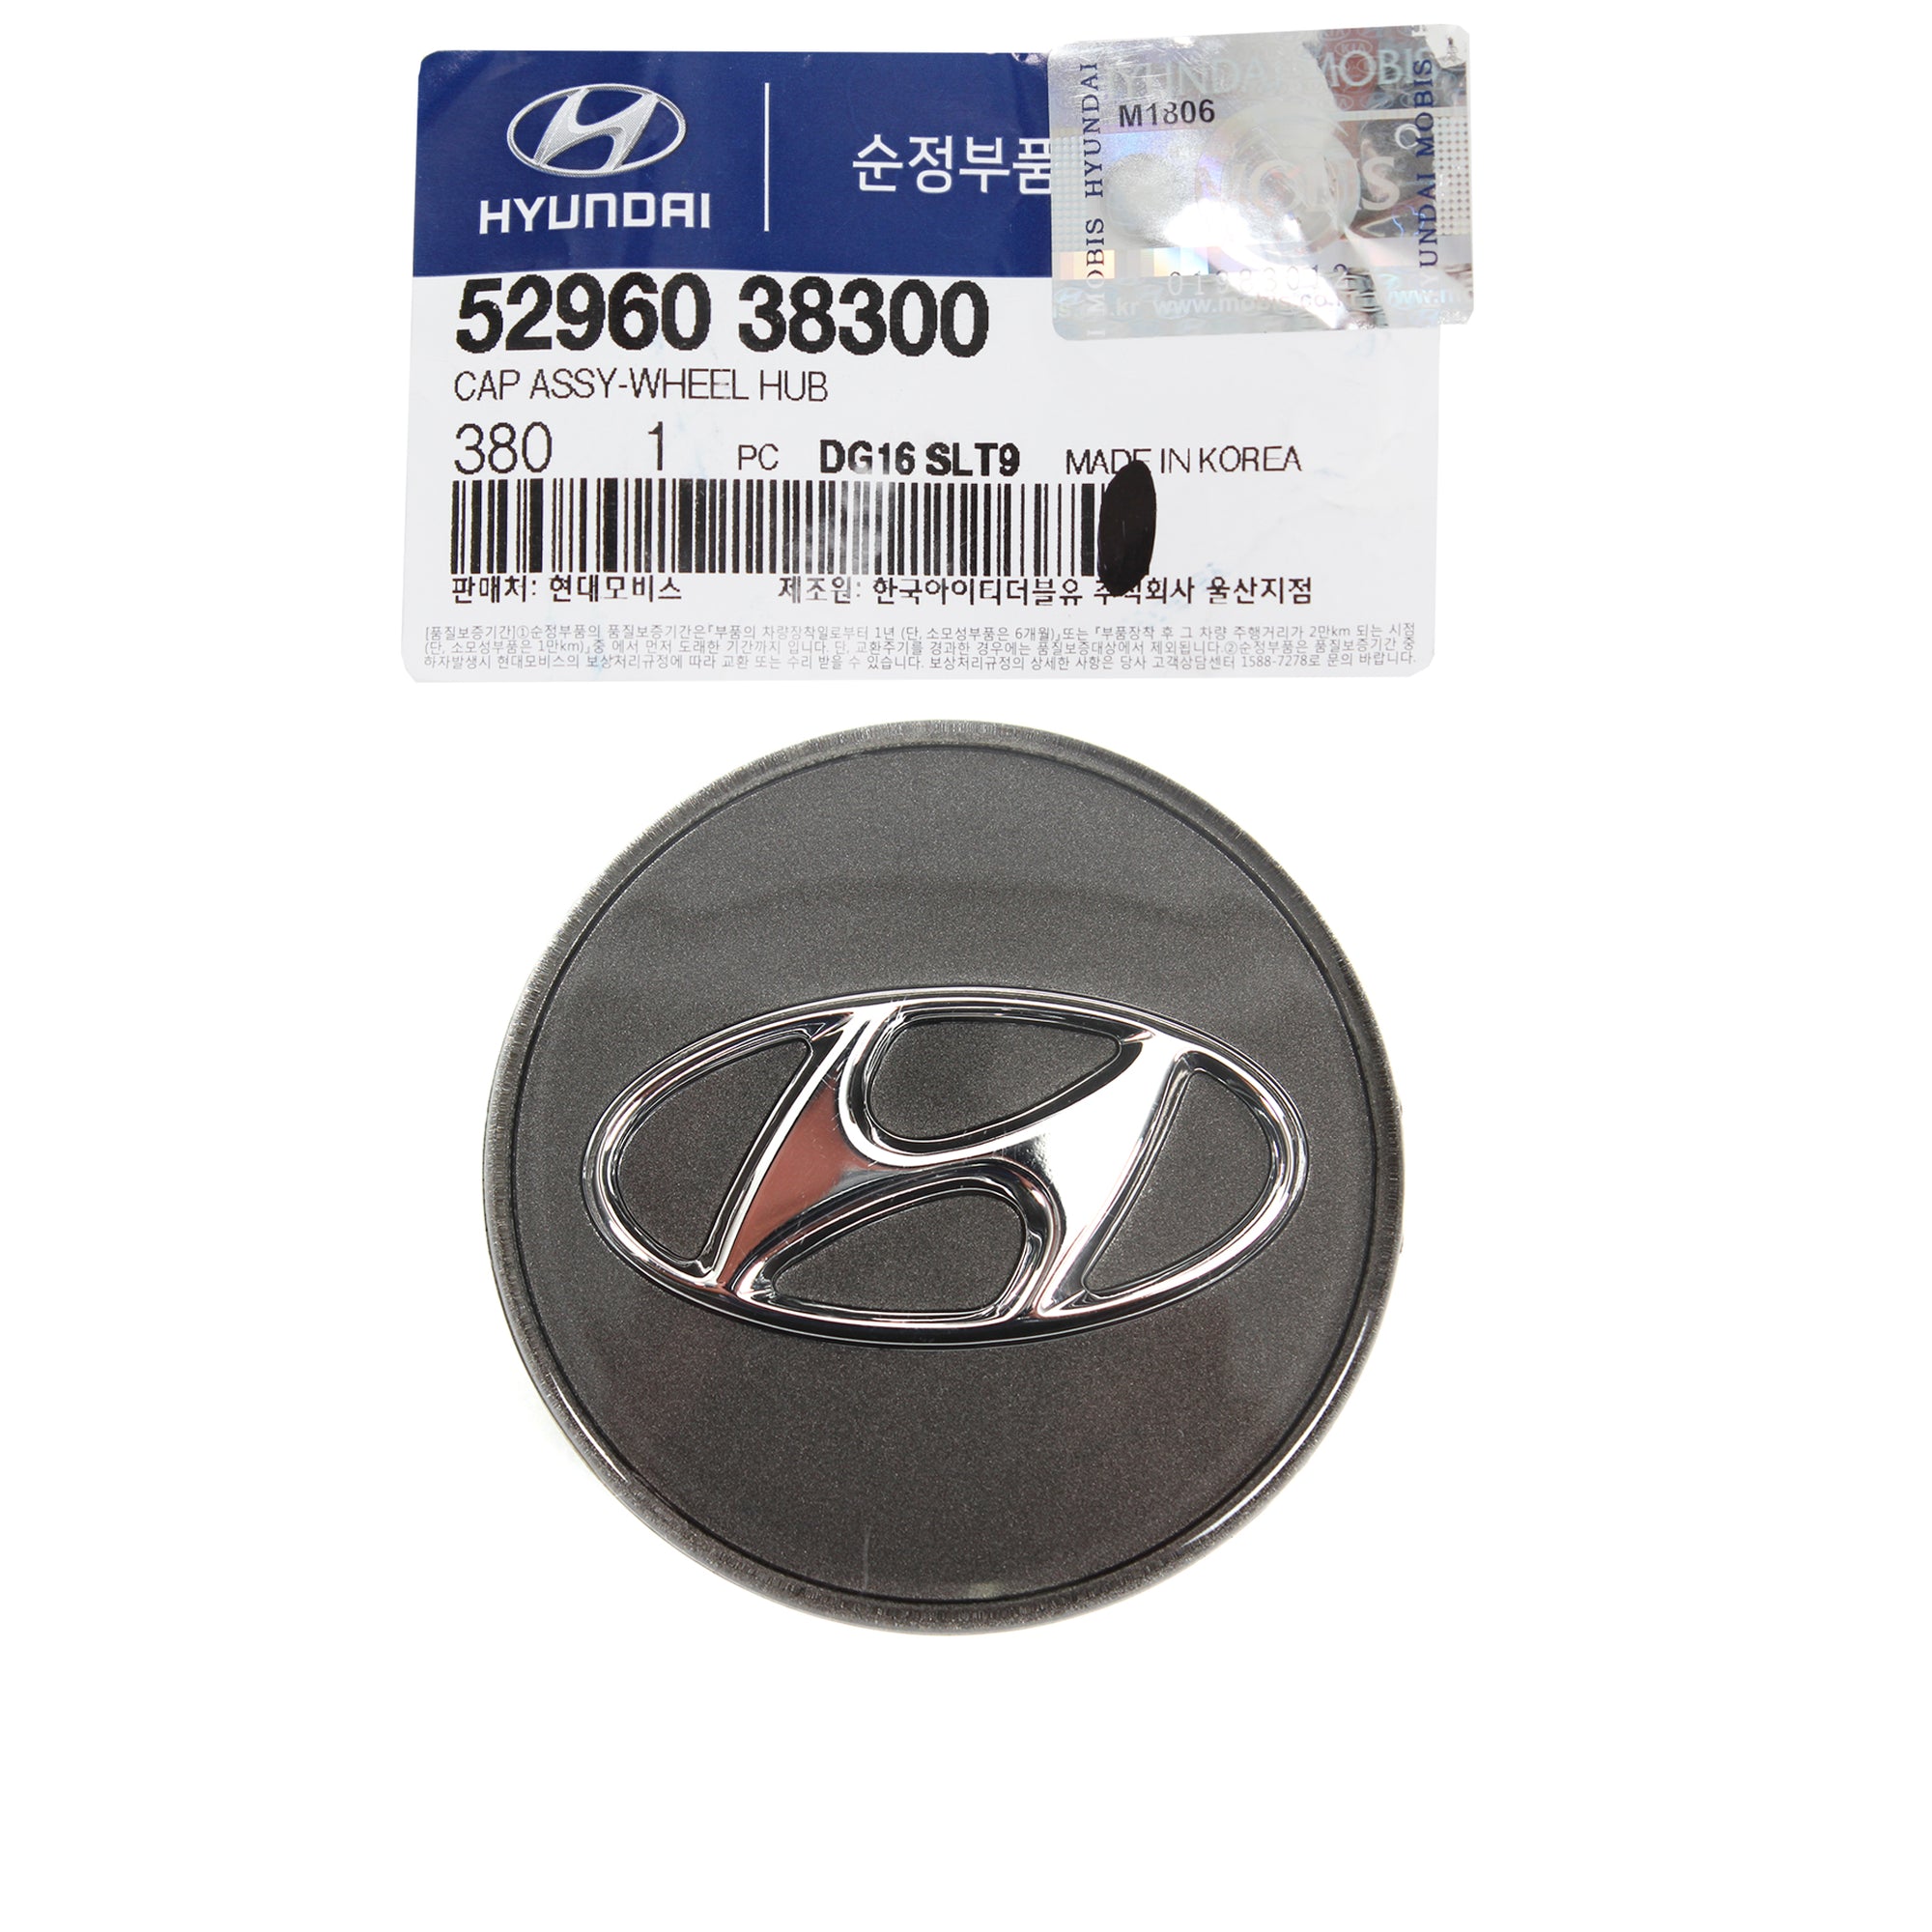 GENUINE Wheel Cap for 99-06 Hyundai Elantra Sonata Tiburon Tucson 5296038300